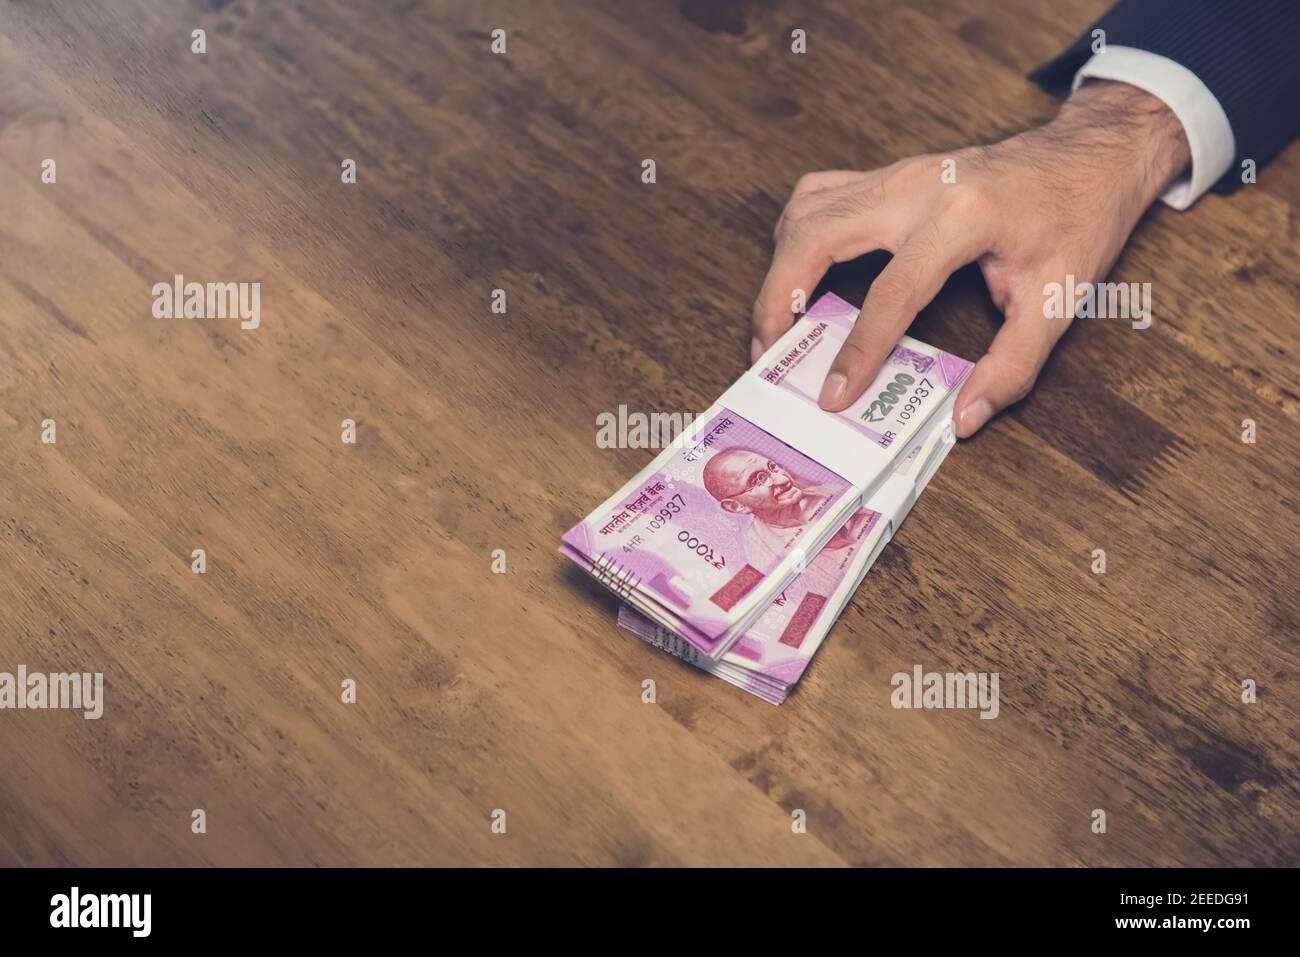 Homme d'affaires donnant (offrant) pile d'argent, monnaie de roupie indienne, sur la table - prêt, corruption et concept de corruption Banque D'Images